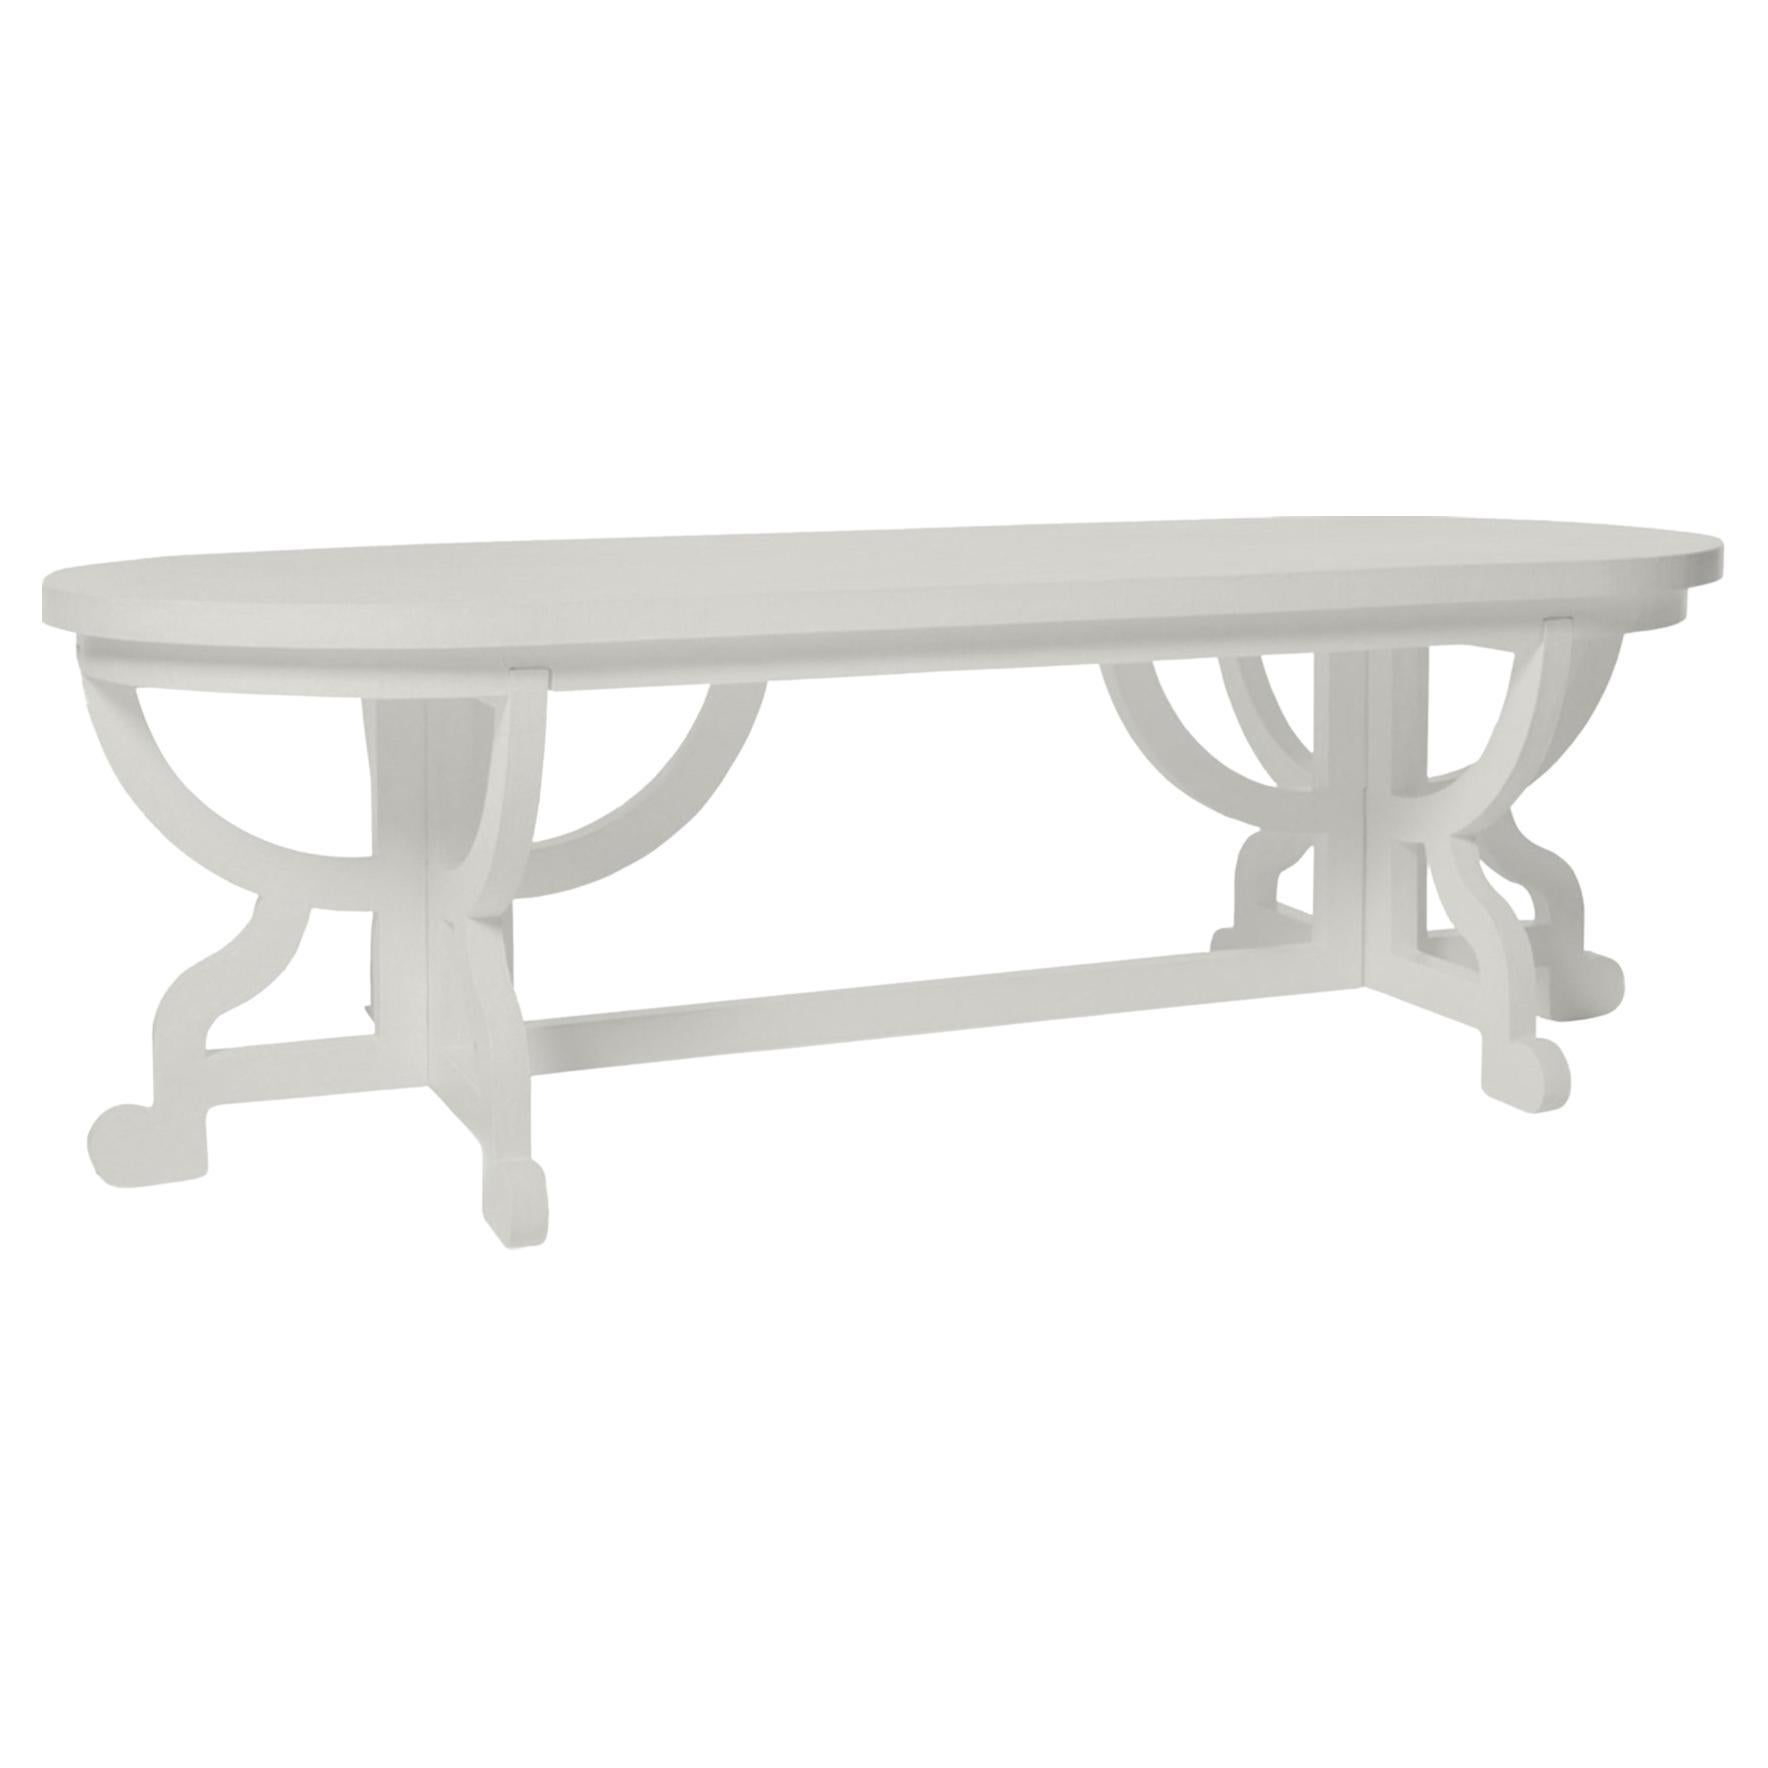 Moooi Paper Table in Silk Grey Wood & Cardboard with Oak Veneer Top by Studio For Sale